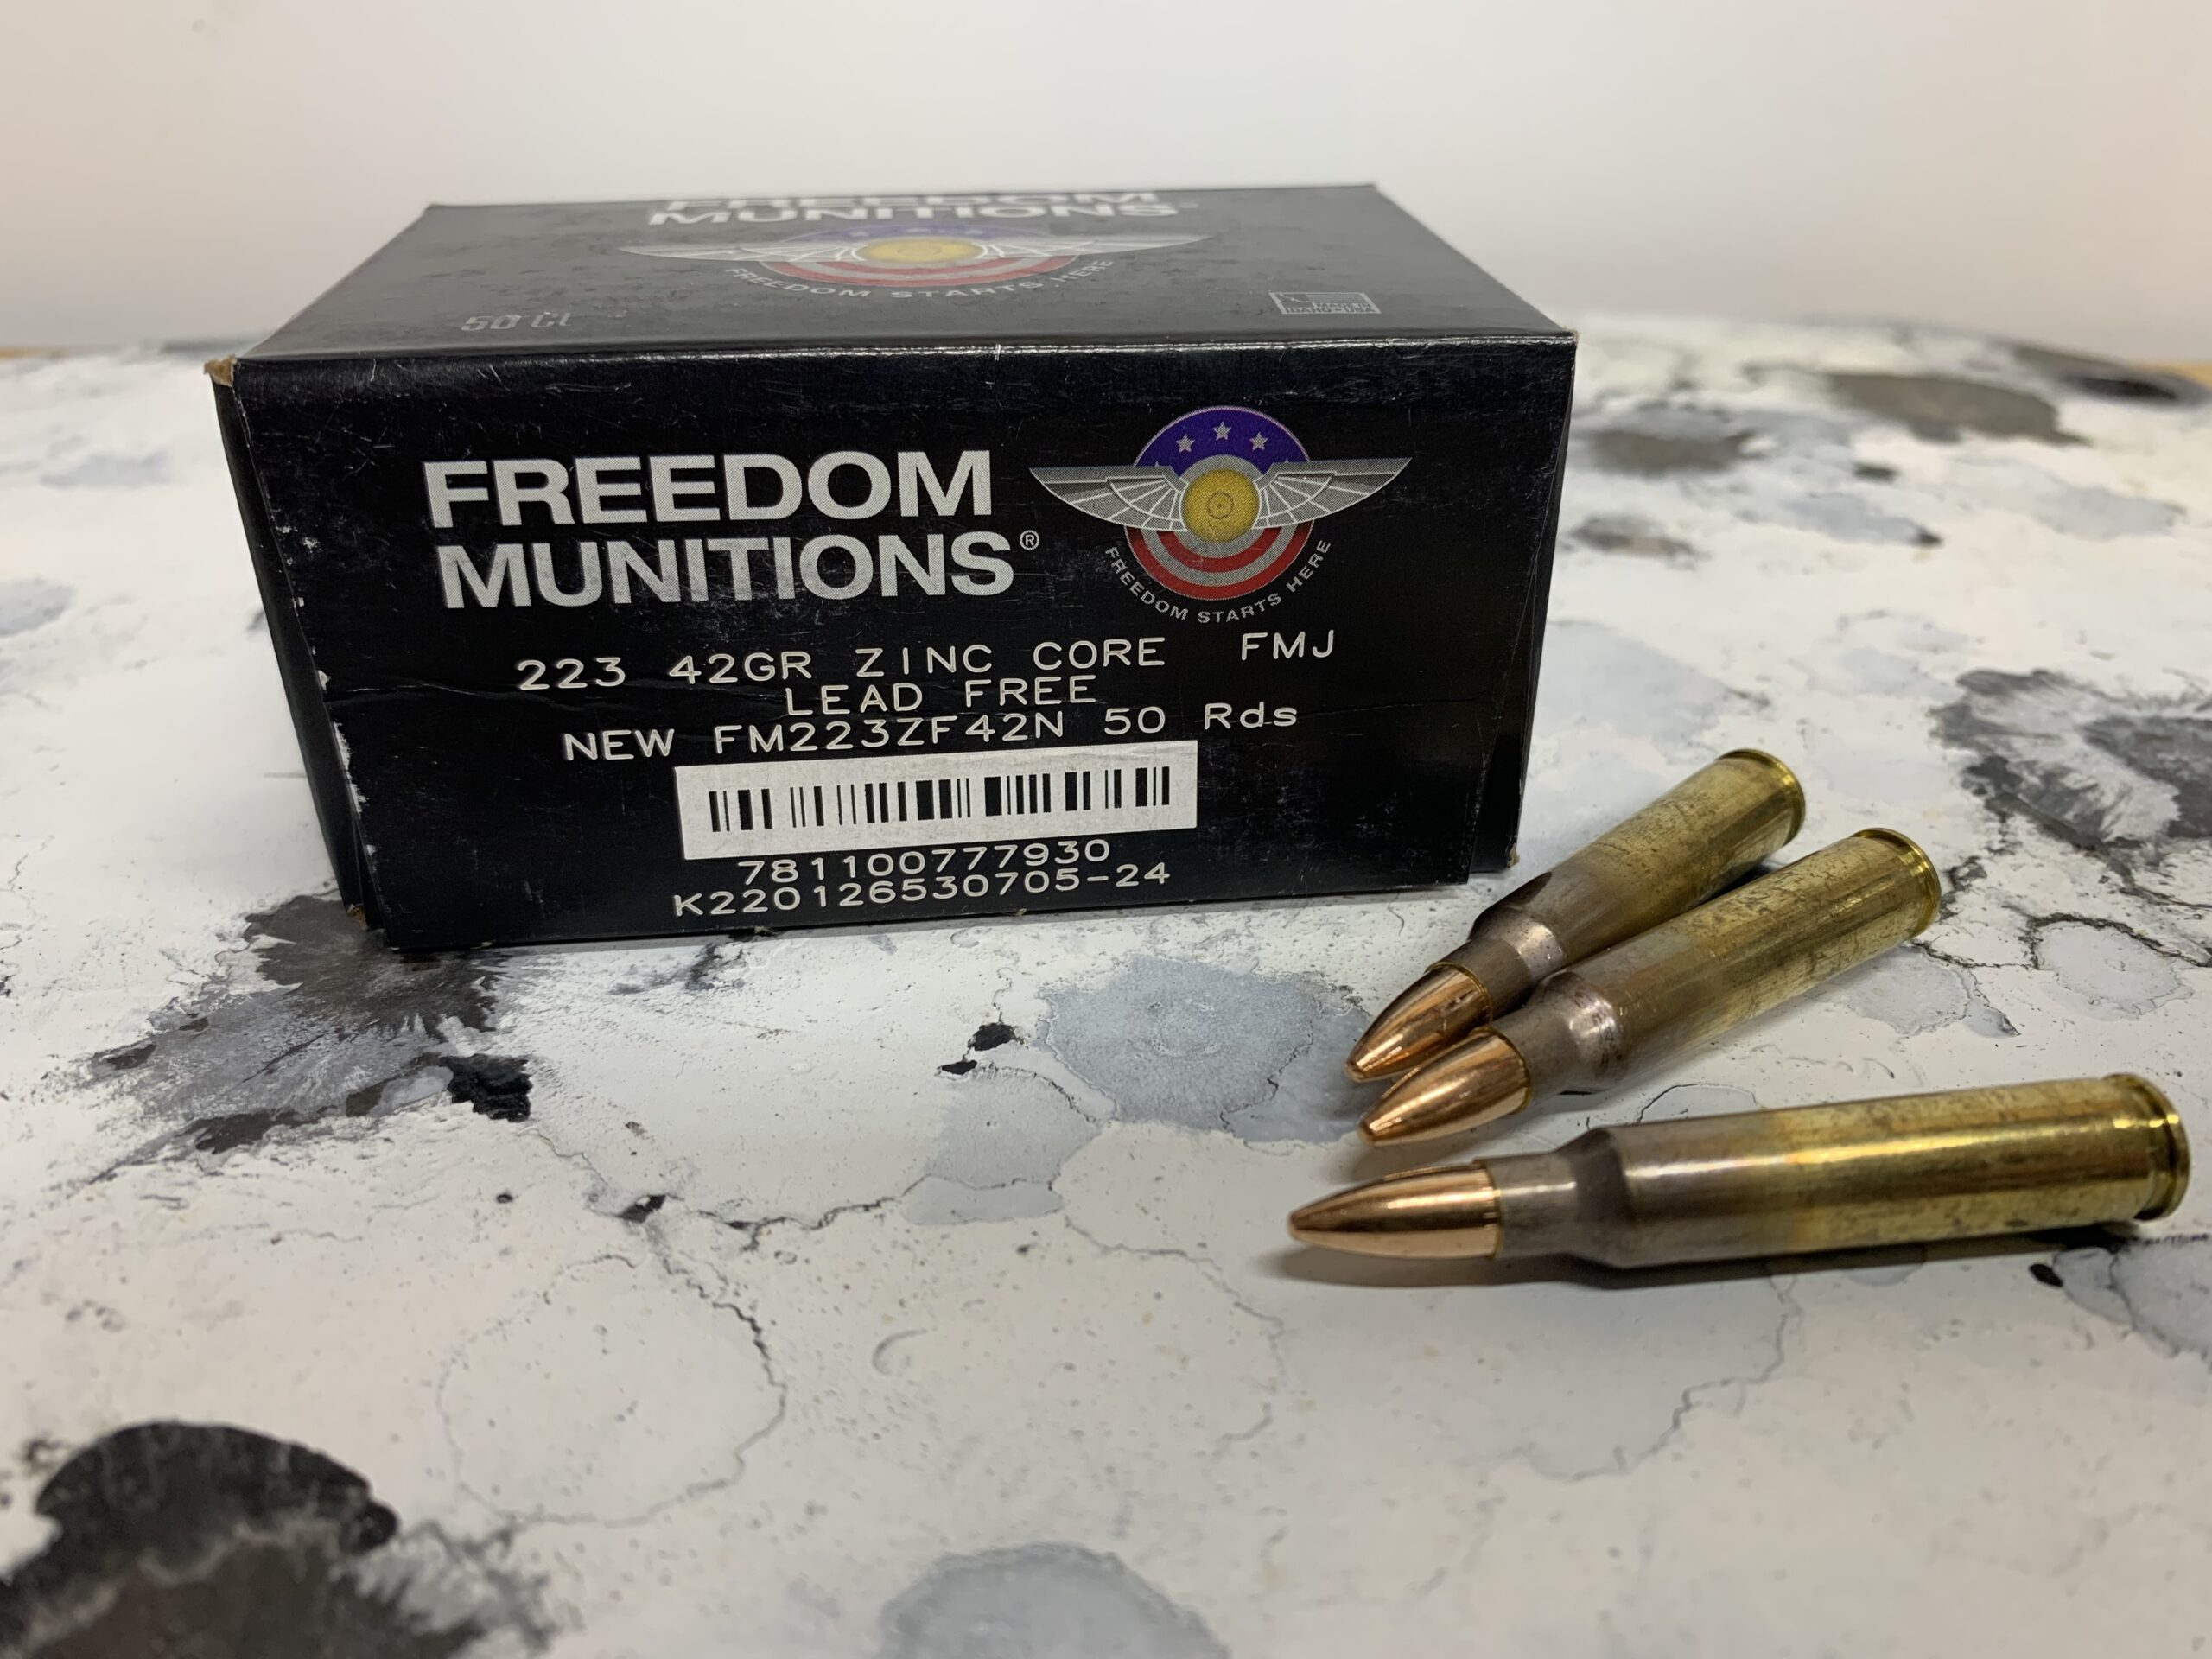 freedom munitions 42gn 5.56 bulk ammo